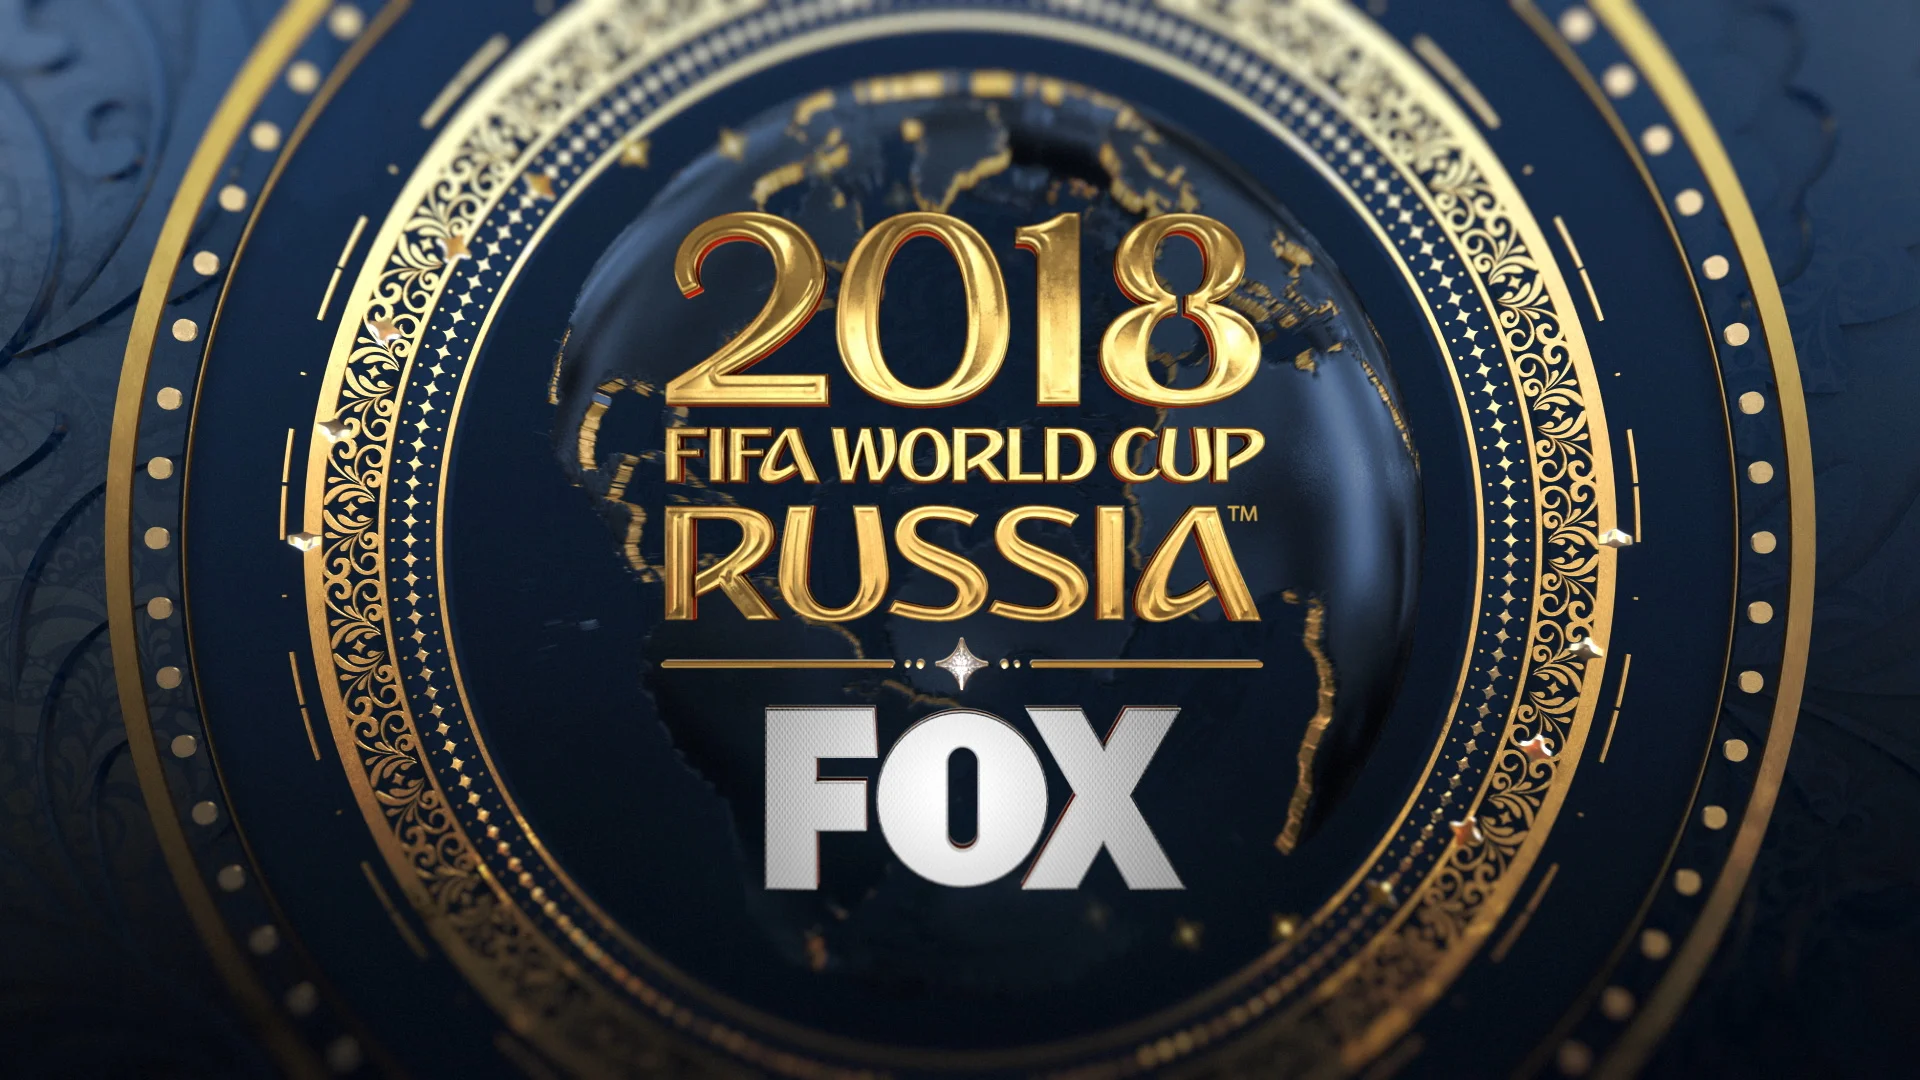 FIFA 18, FIFA World Cup Trailer